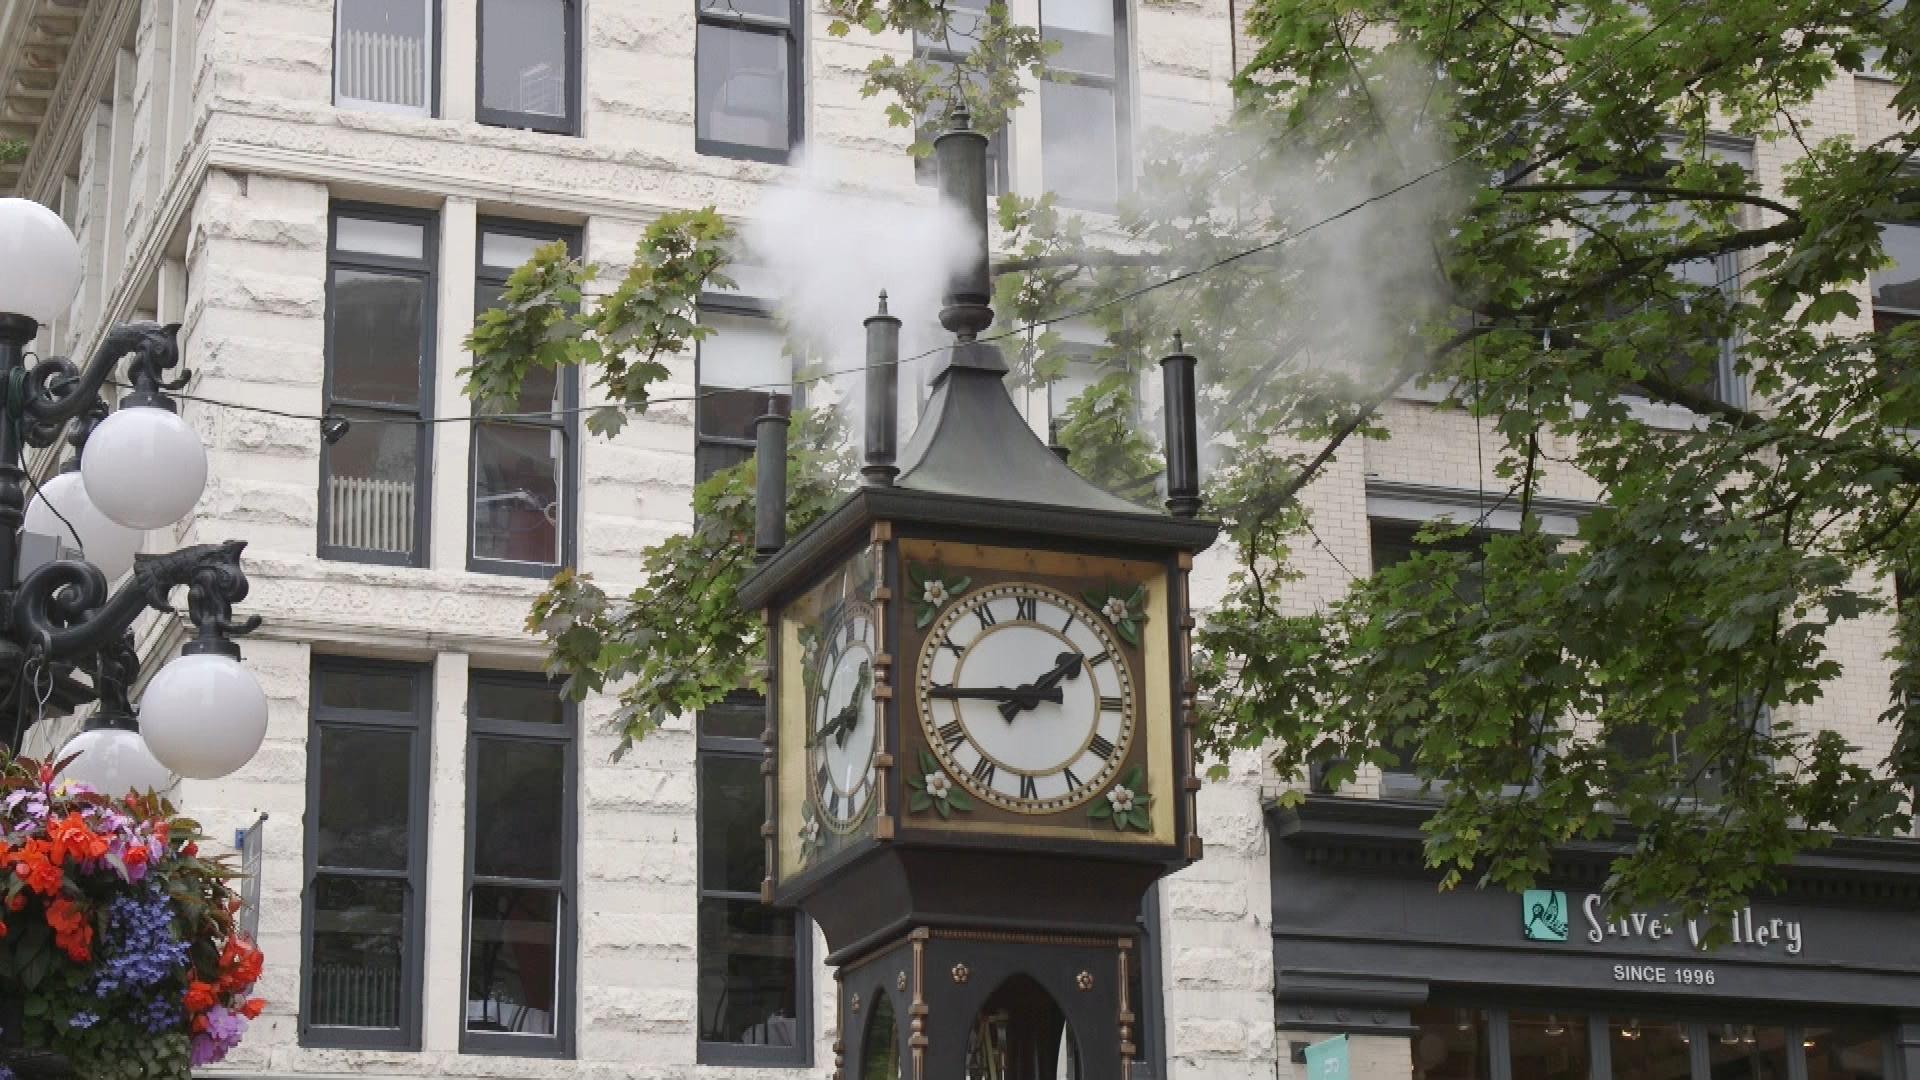 Gastown steam clock